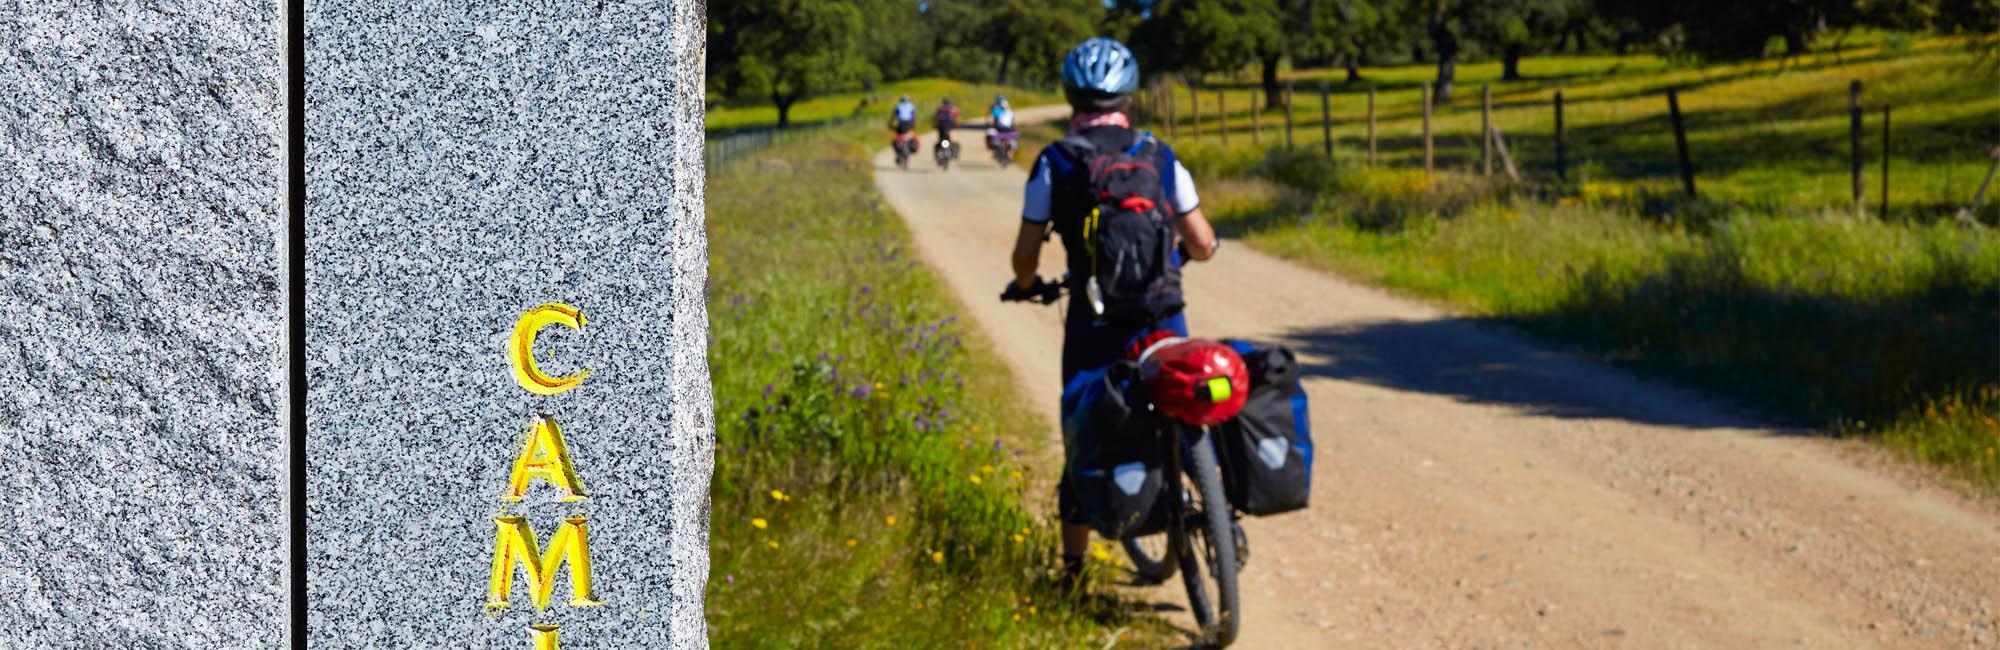 Sulla sinistra una pietra con inscrizione gialla, sulla destra un uomo fermo in bicicletta, carico di 2 borse laterali blu che guarda avanti verso i suoi compagni di cammino